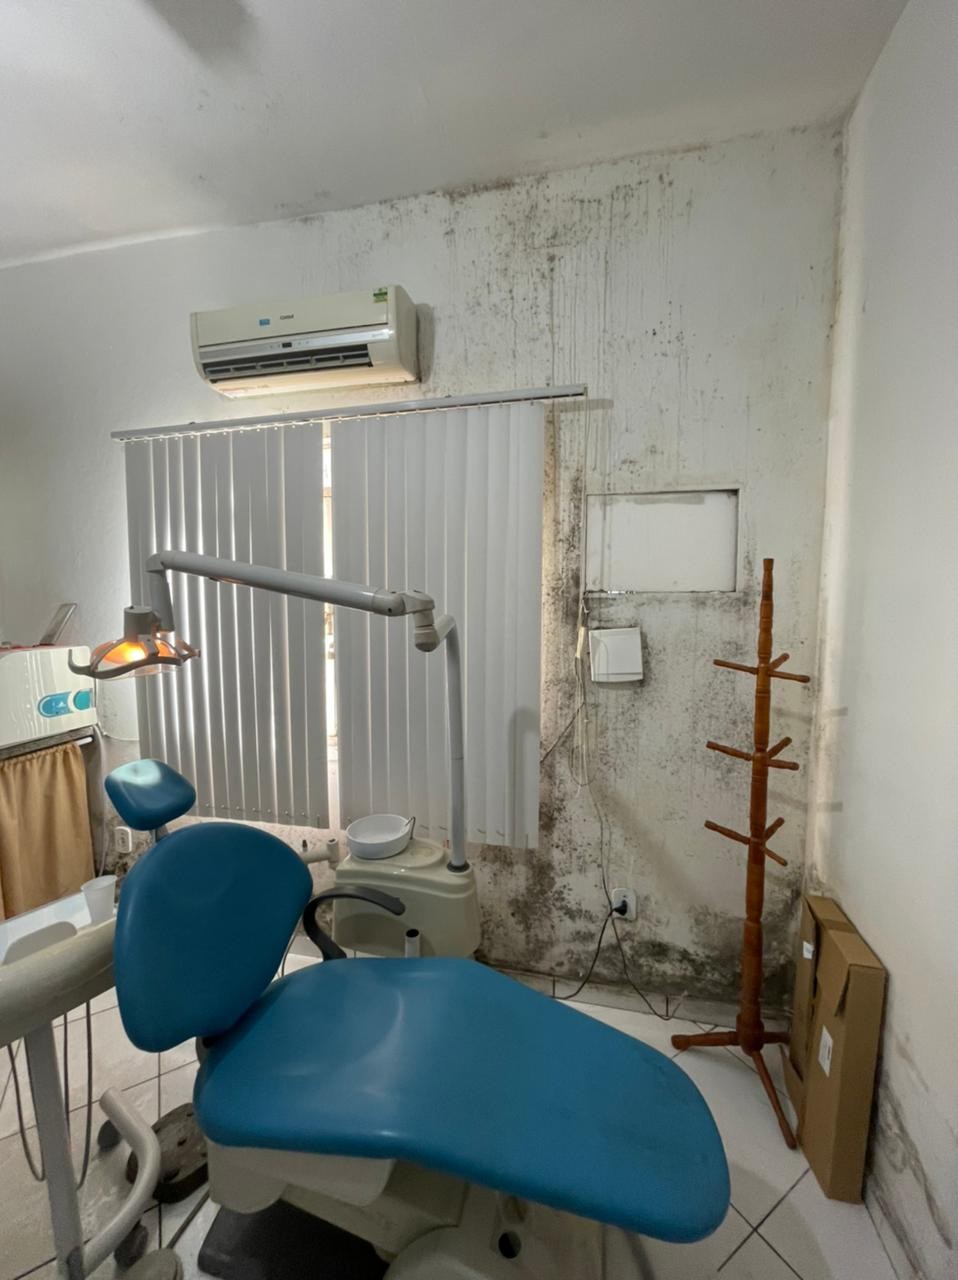 Conselho Regional de Odontologia encontra condições insalubres para atendimento em posto de saúde de Bom Jesus do Itabapoana, no RJ